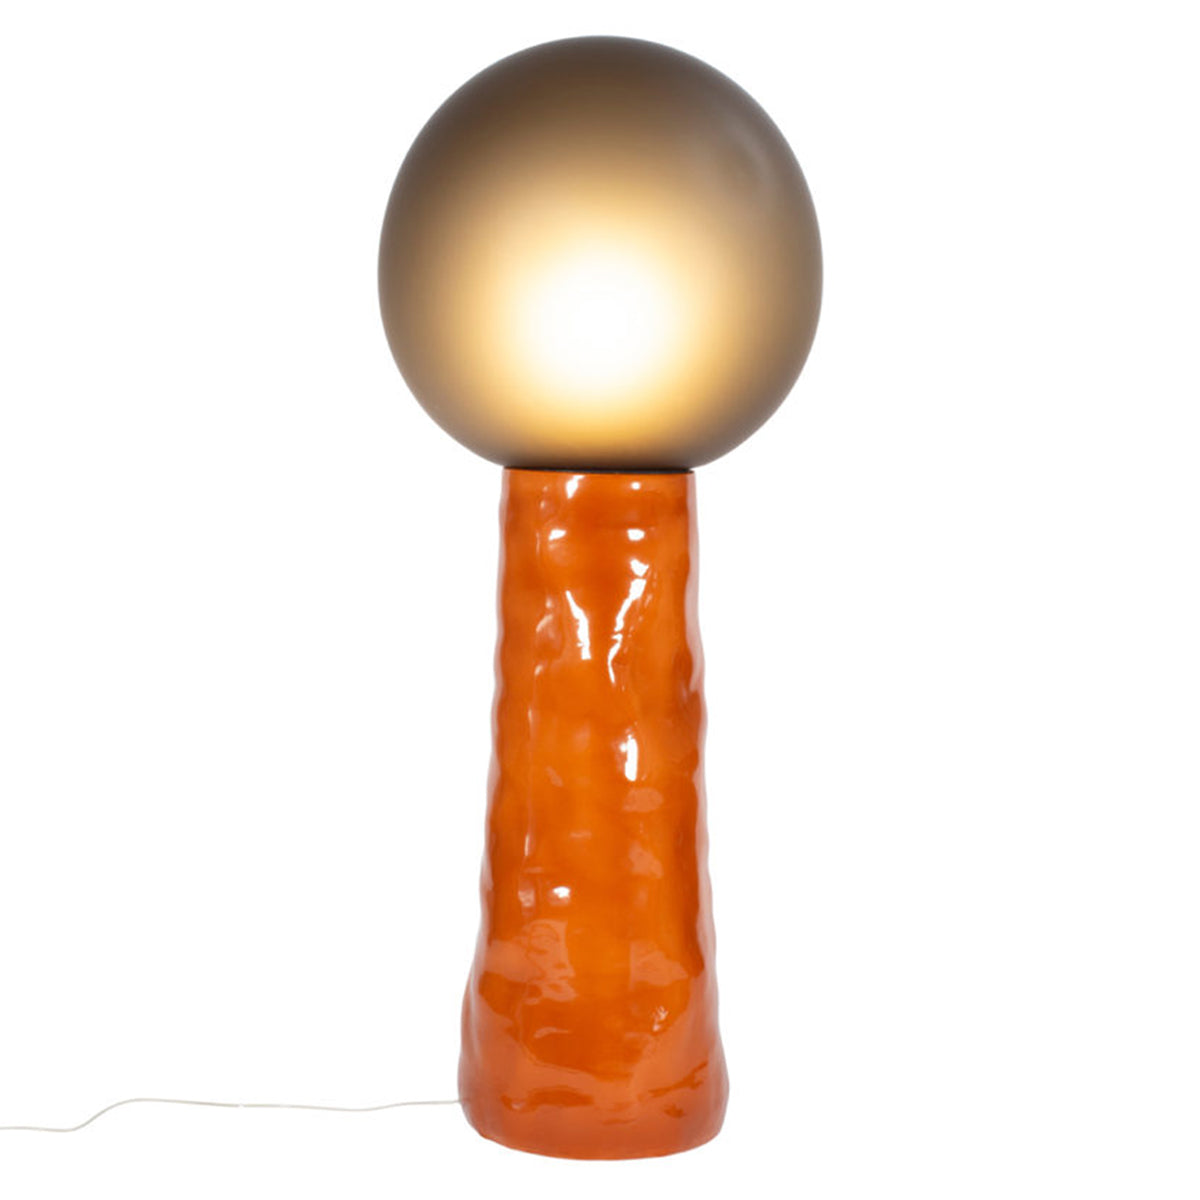 Kokeshi Floor Lamp: High - 23.6